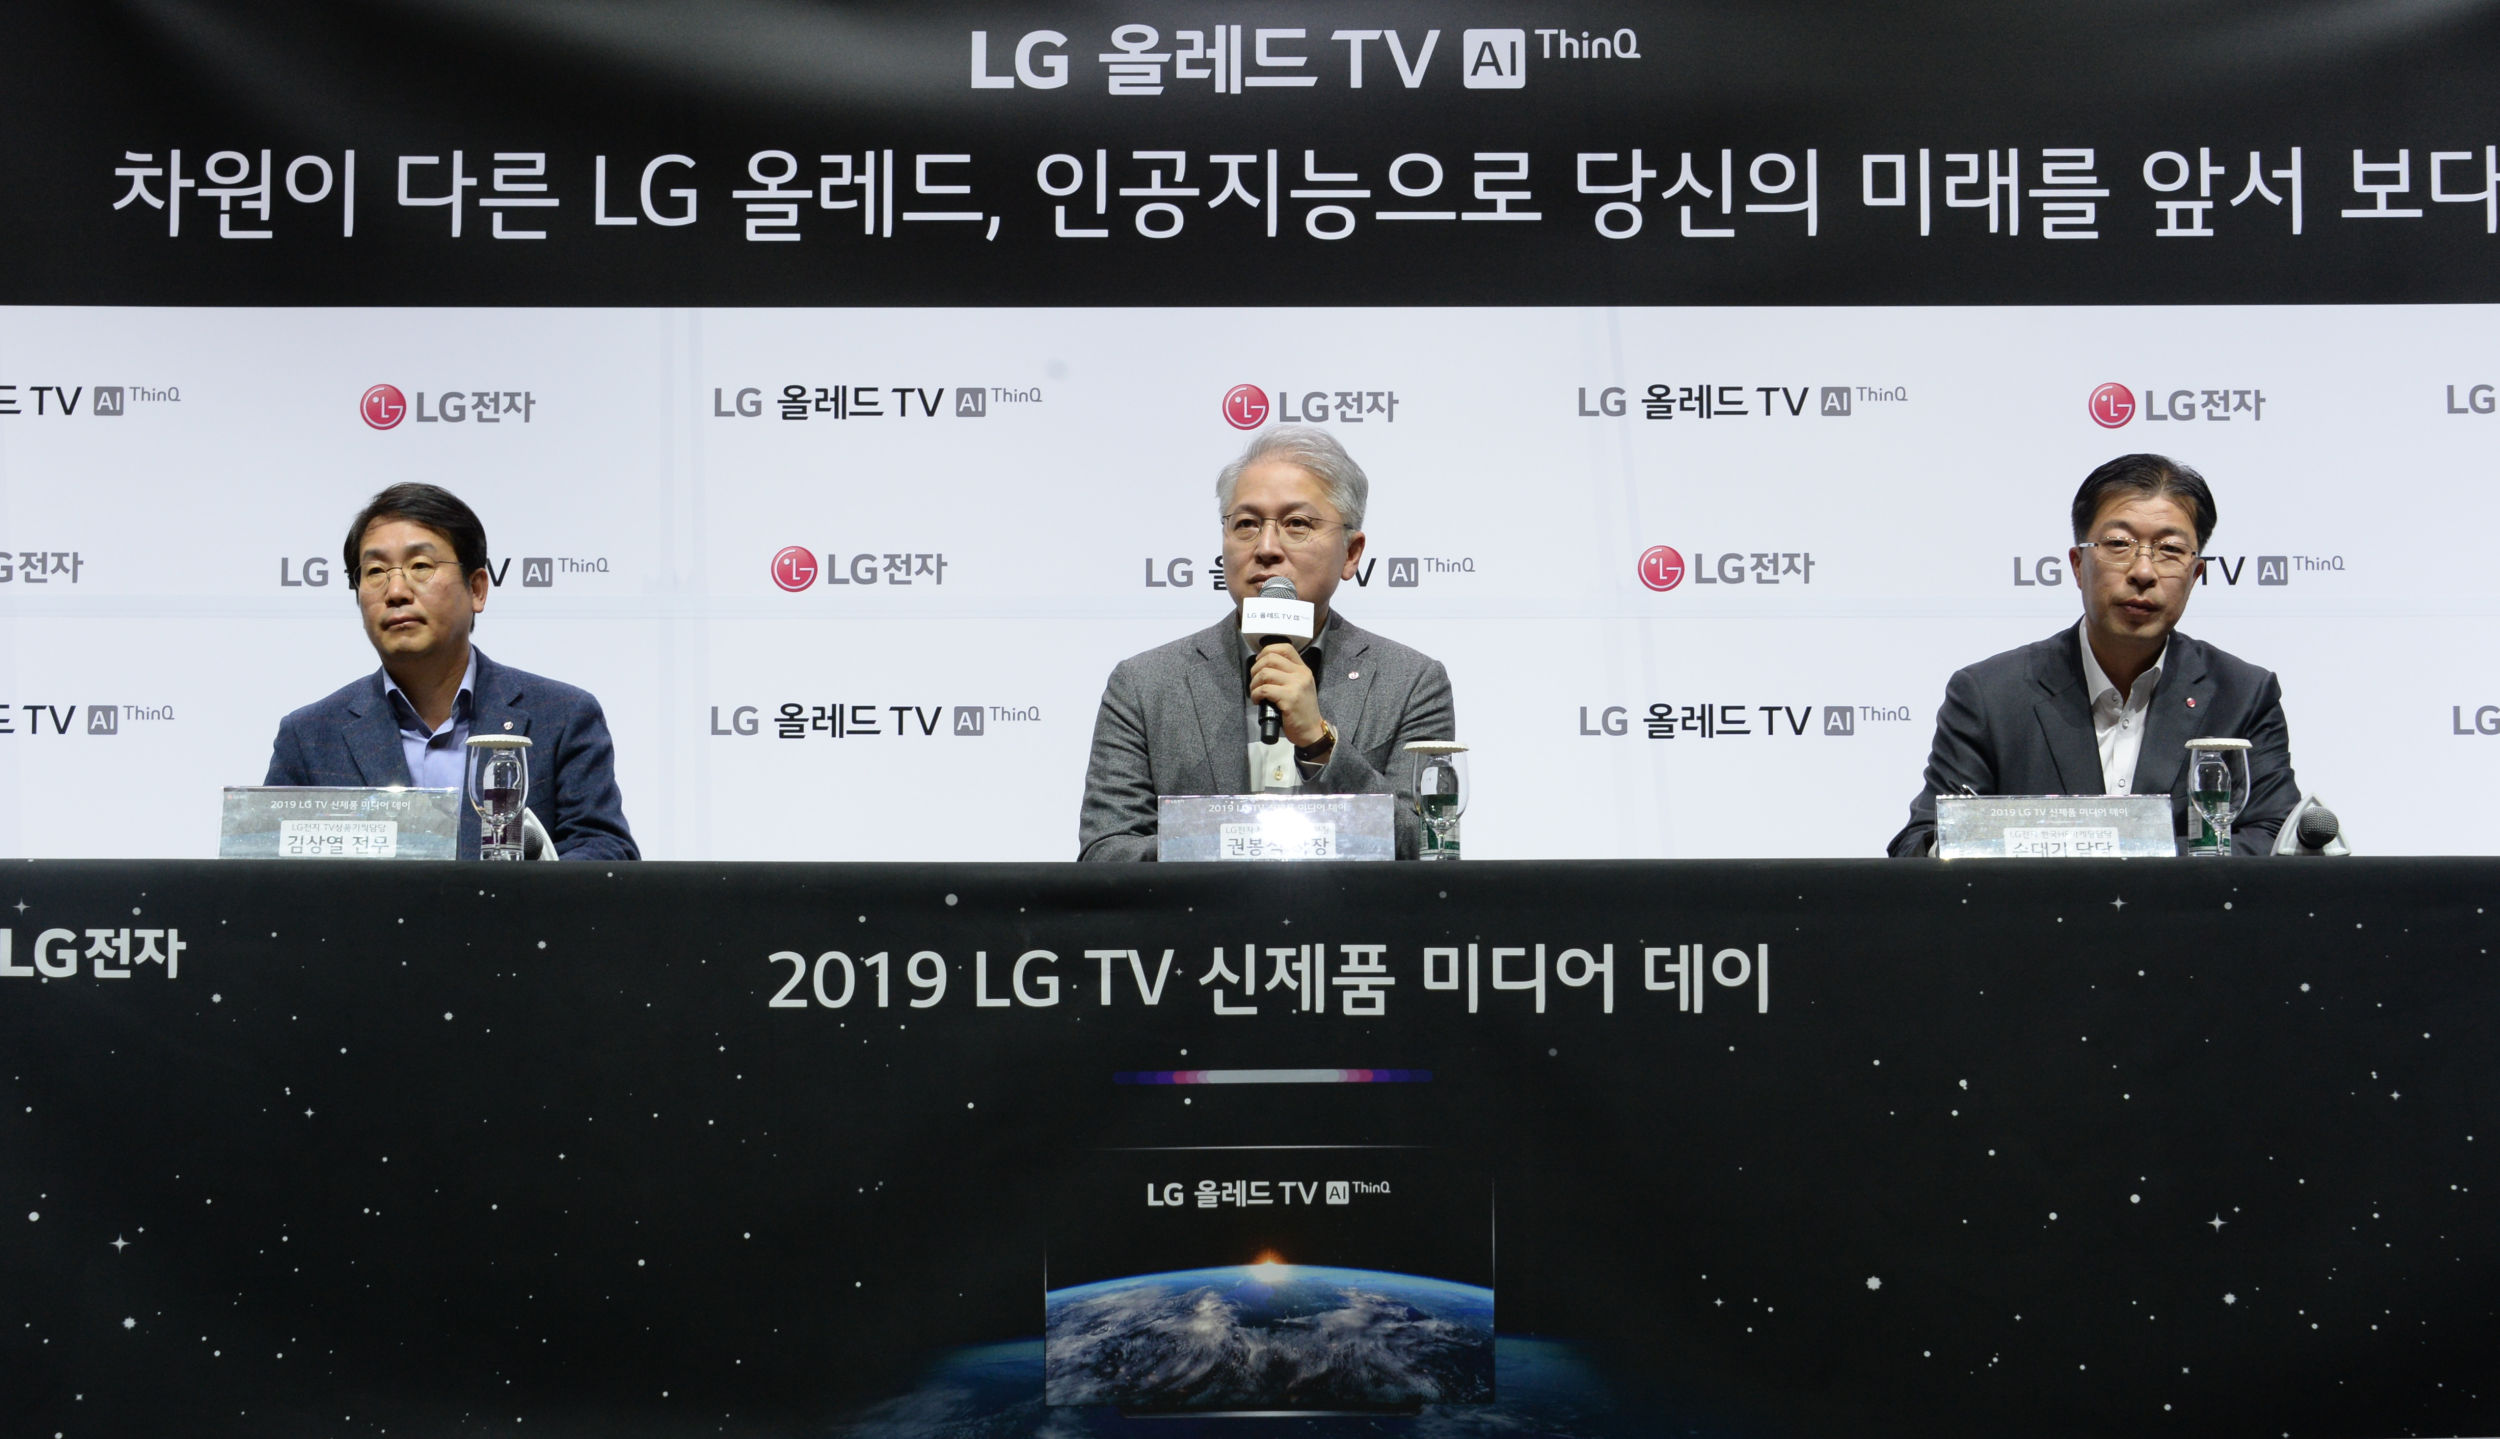 6일 서울 마곡 소재 LG사이언스파크에서 열린 2019년 LG TV 신제품 발표행사에서 TV상품기획담당 김상열 전무(왼쪽), MC/HE사업본부장 권봉석 사장(가운데), 손대기 한국HE마케팅담당(오른쪽)이 올해 TV 사업에 대해 발표하고 있다.